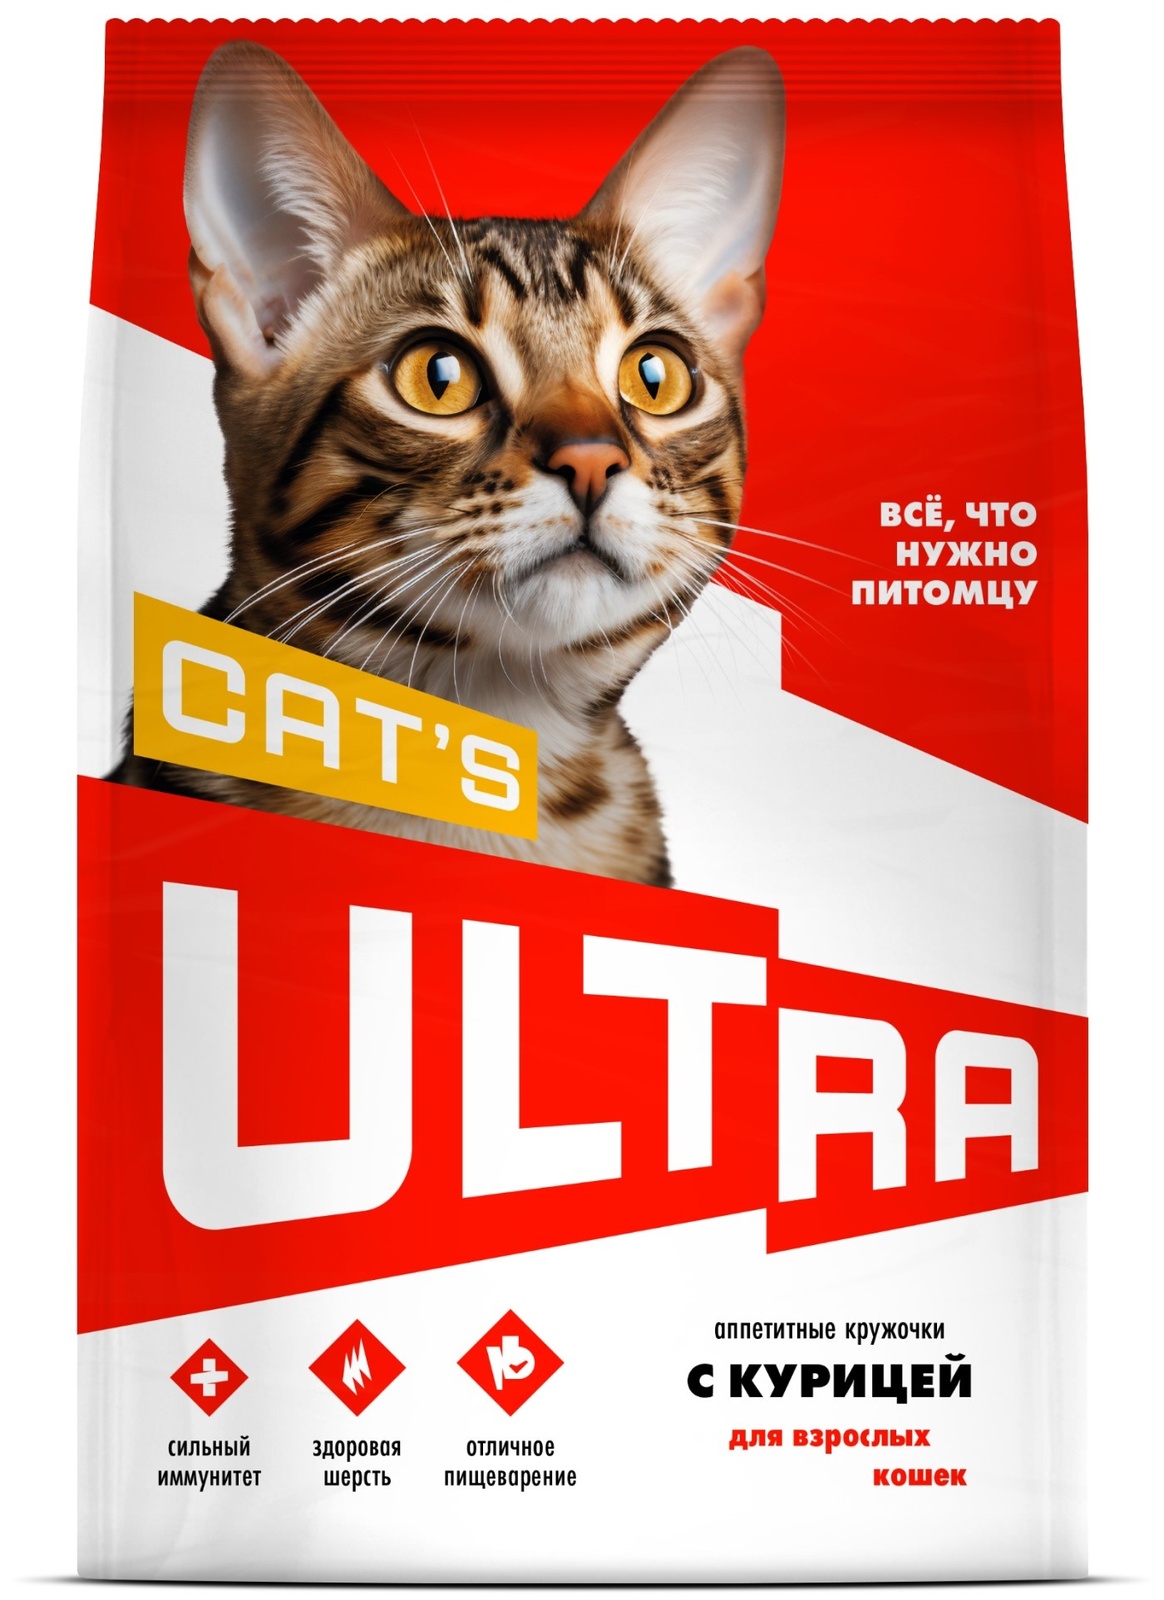 ULTRA ULTRA аппетитные кружочки с курицей для взрослых кошек (600 г) ultra ultra аппетитные кружочки 3 вида мяса для взрослых собак всех пород 600 г